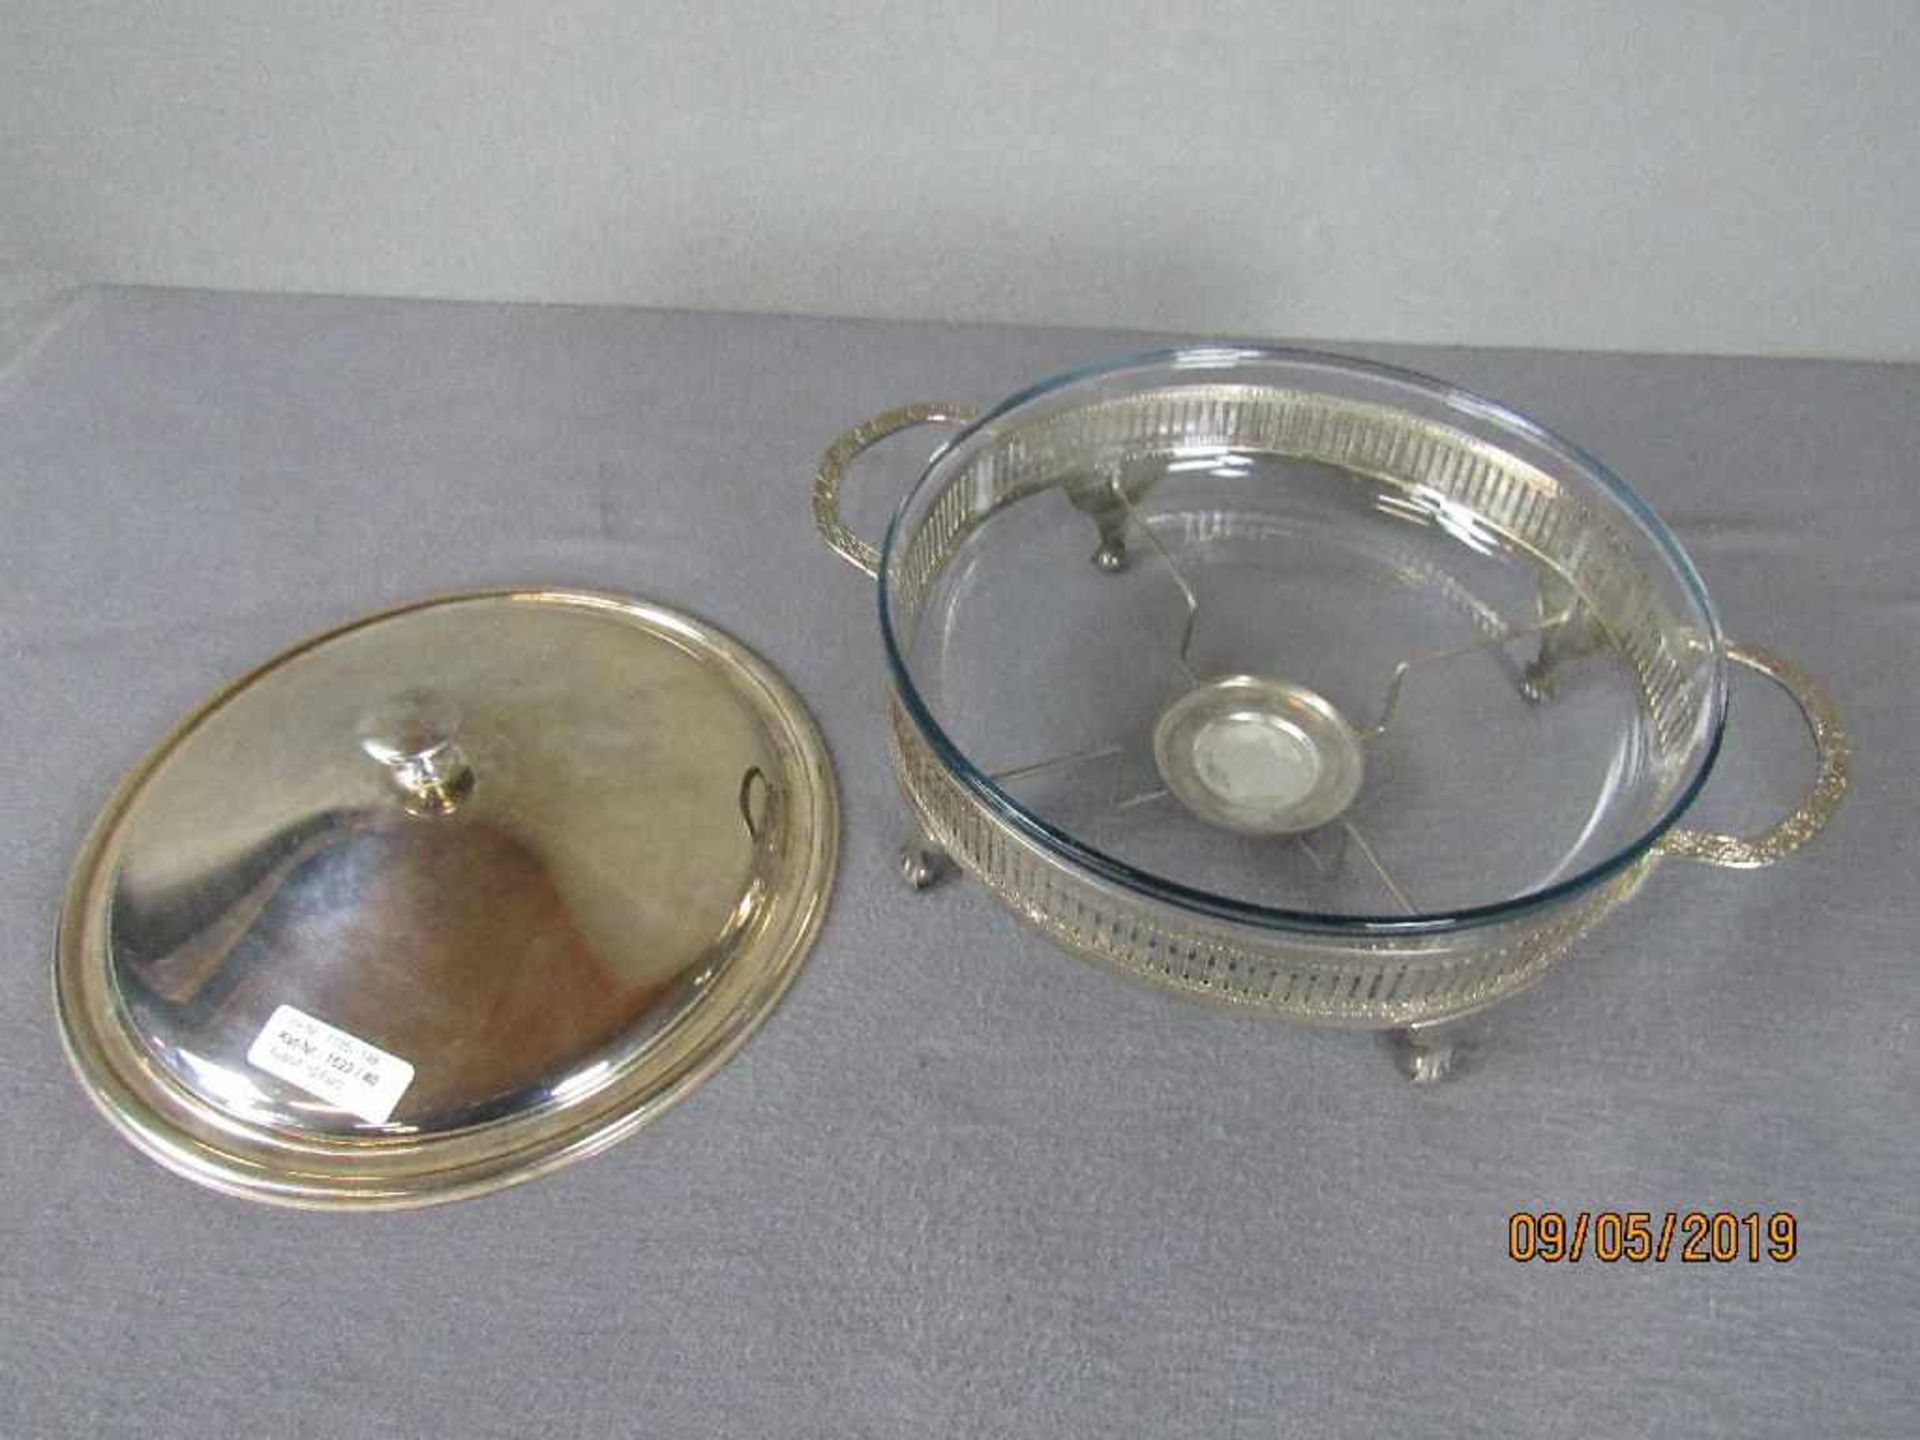 Warmhalteschale versilbertes Metall und Glaseinsatz Durchmesser 27cm - Image 2 of 2